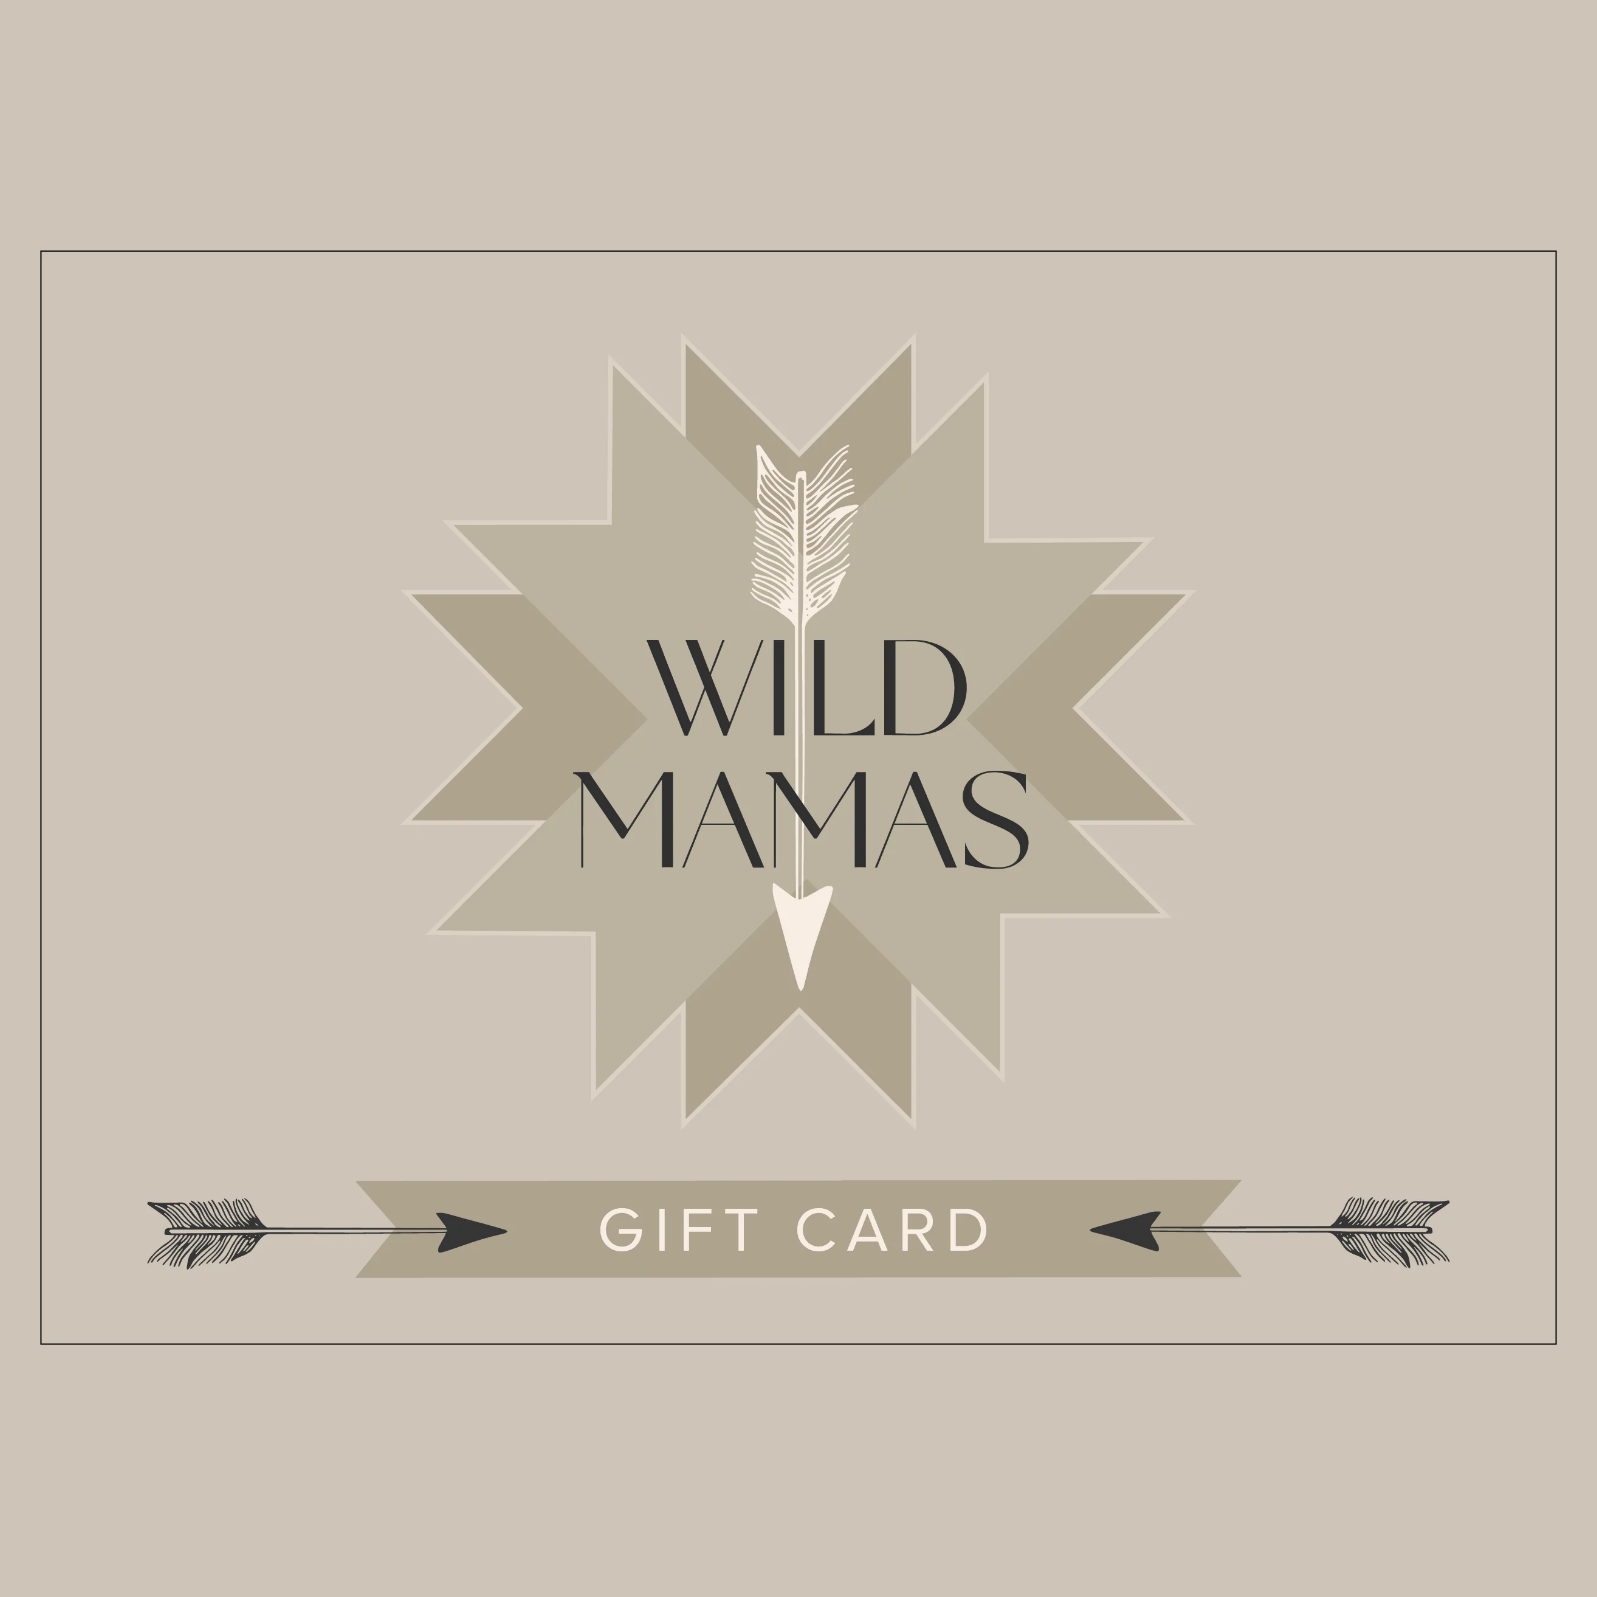 Wild Mamas gift card